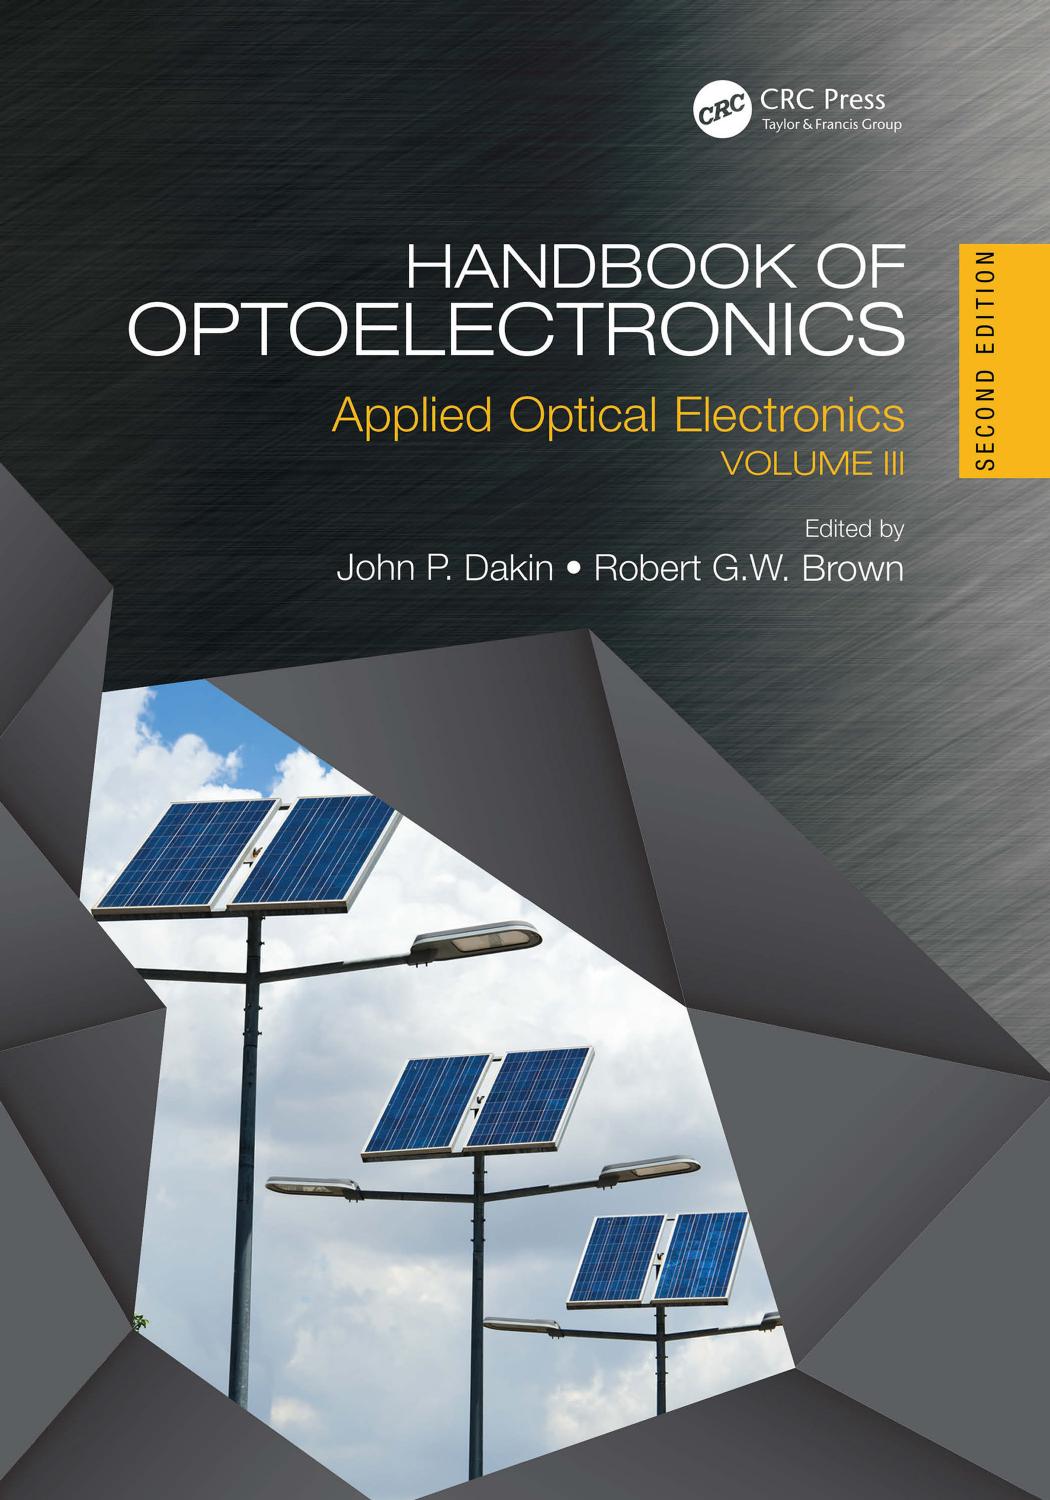 Handbook of Optoelectronics: Applications of Optoelectronics